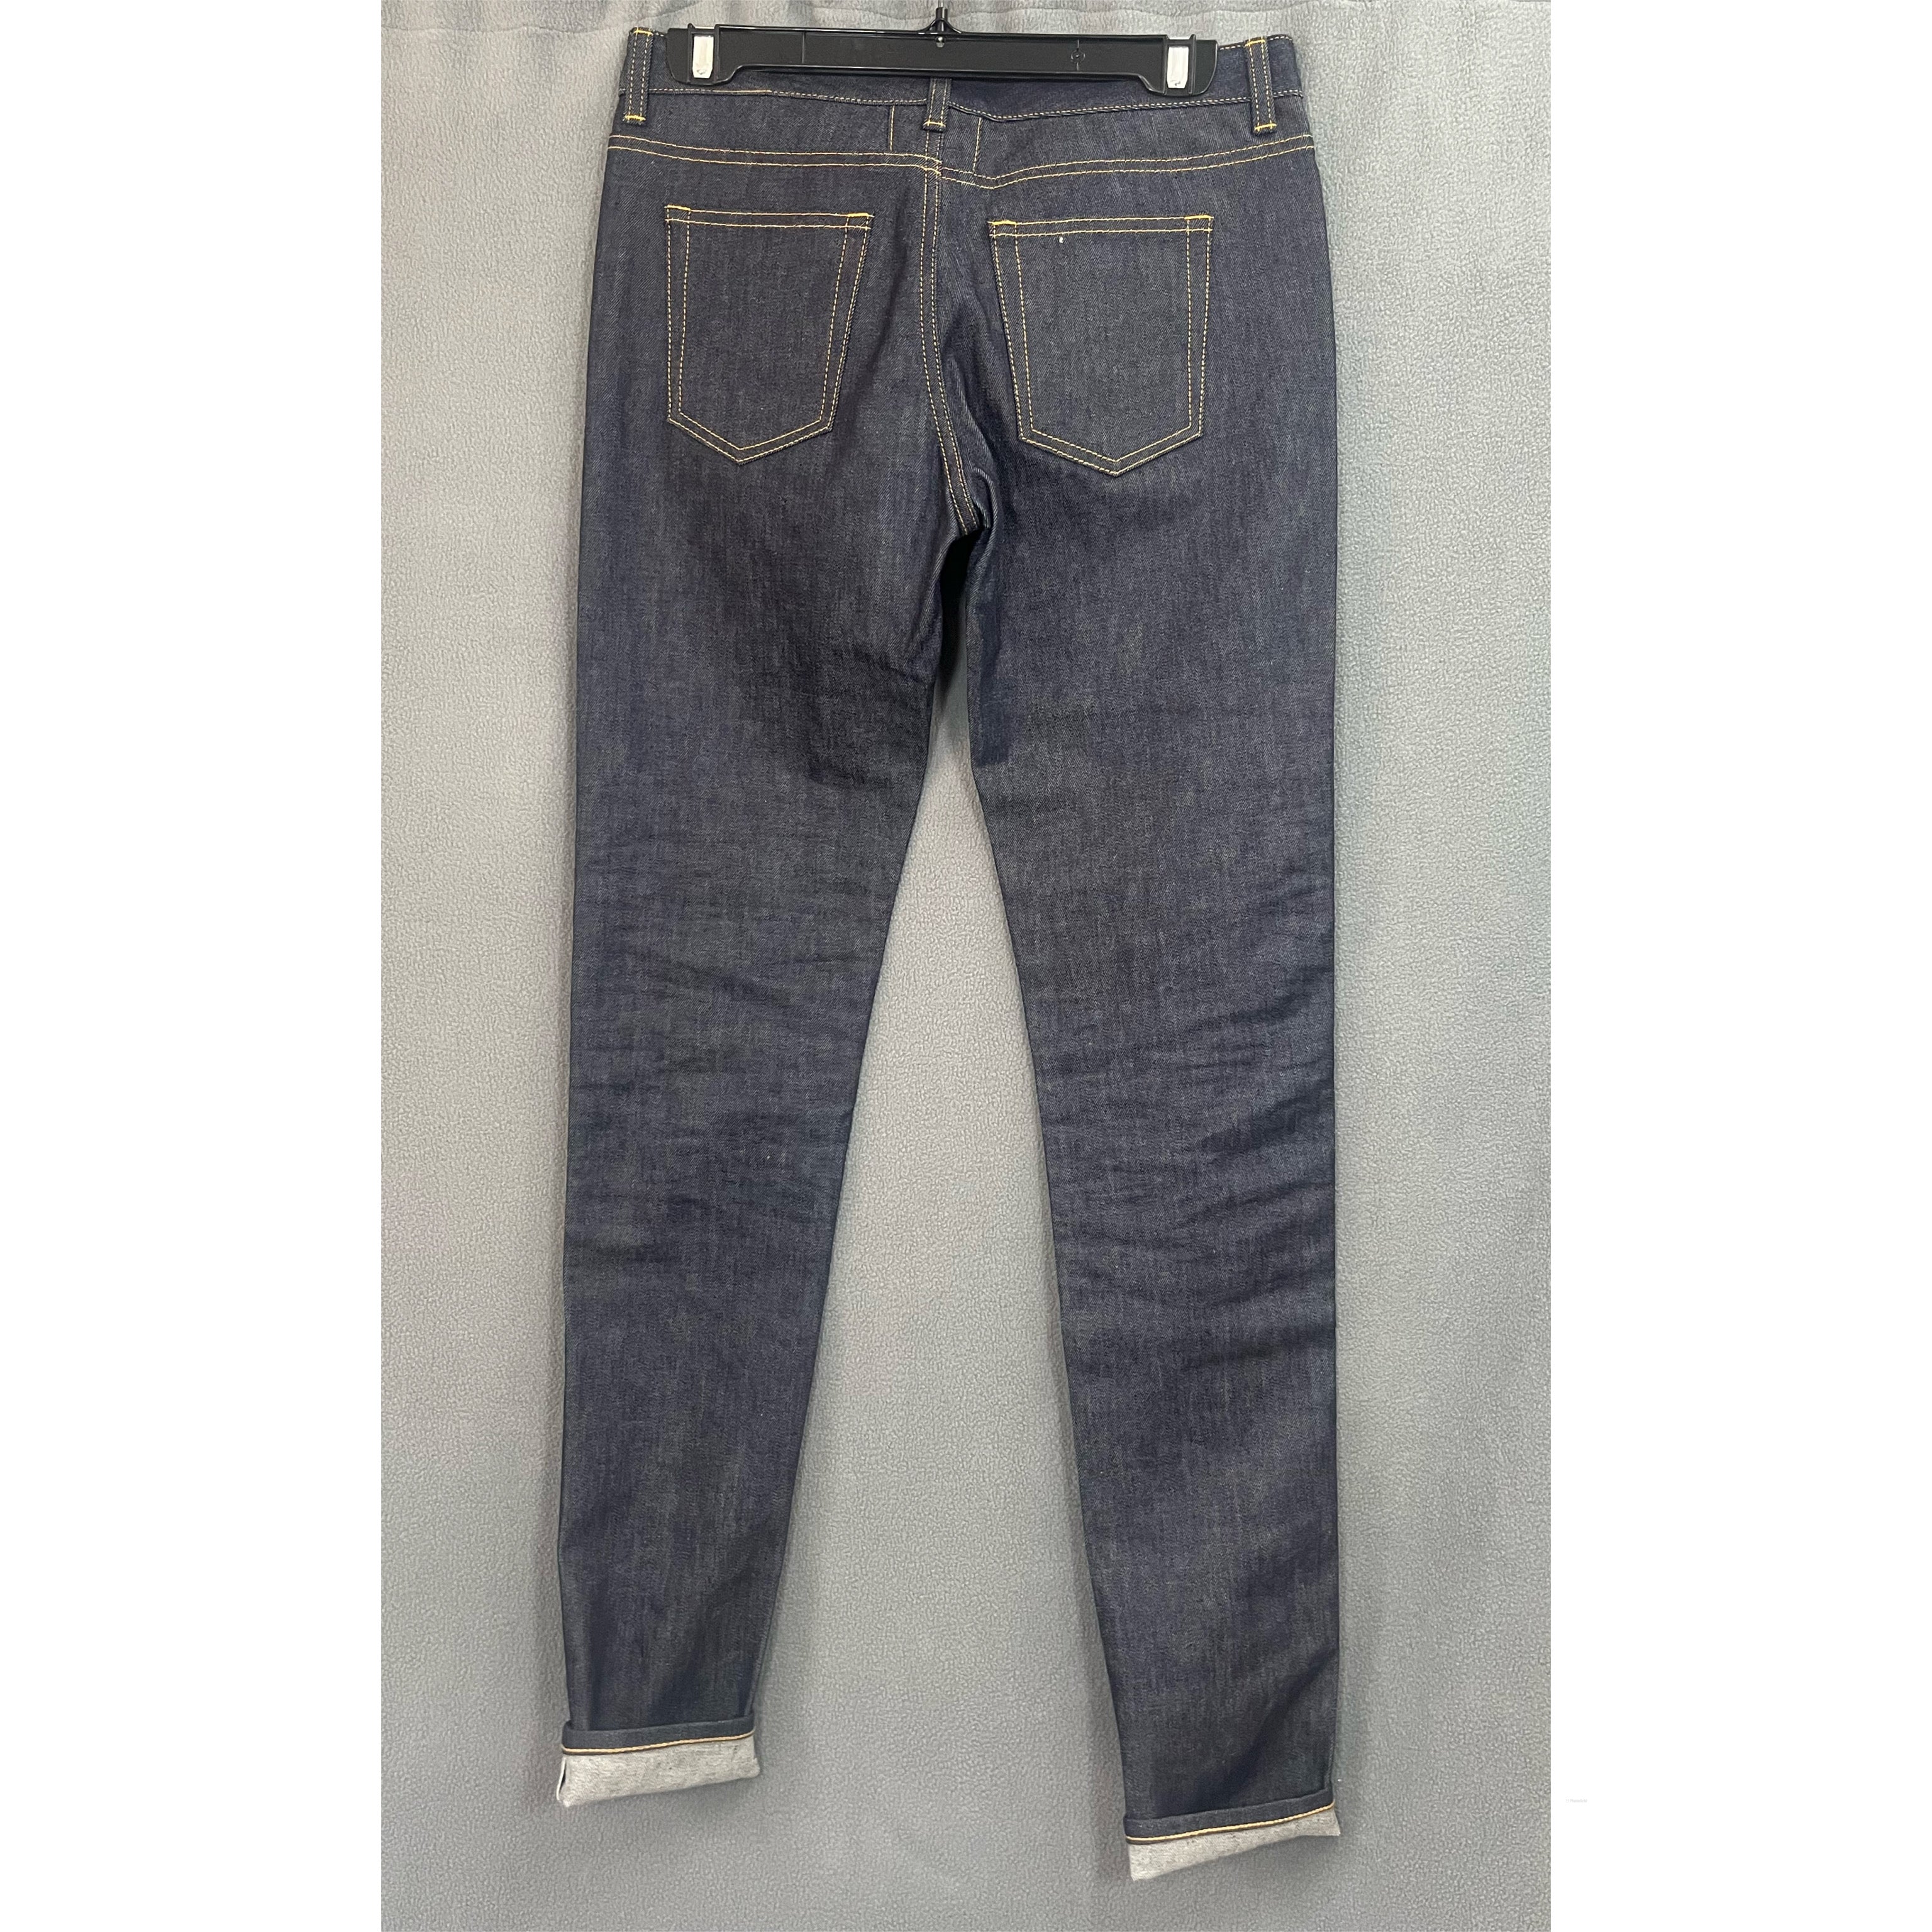 Saint Laurent dark selvedge denim jeans, size 30, LIKE NEW!